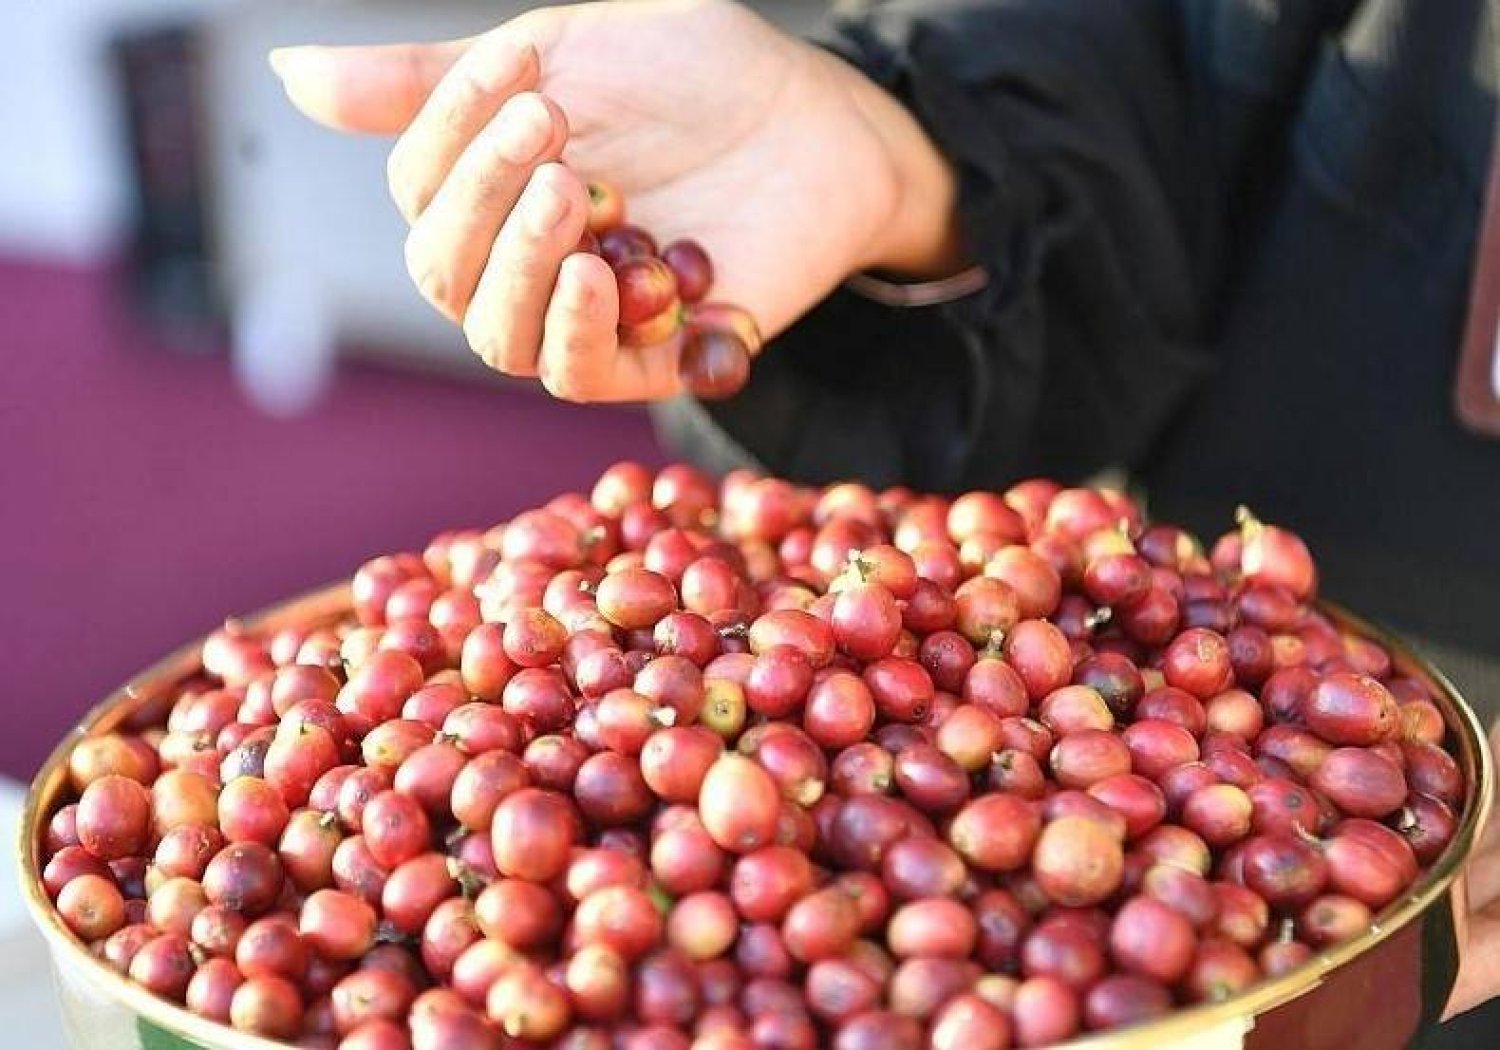 تعمل الشركة السعودية للقهوة على تعزيز جهود تطوير الزراعة المستدامة في منطقة جازان (الشرق الأوسط)